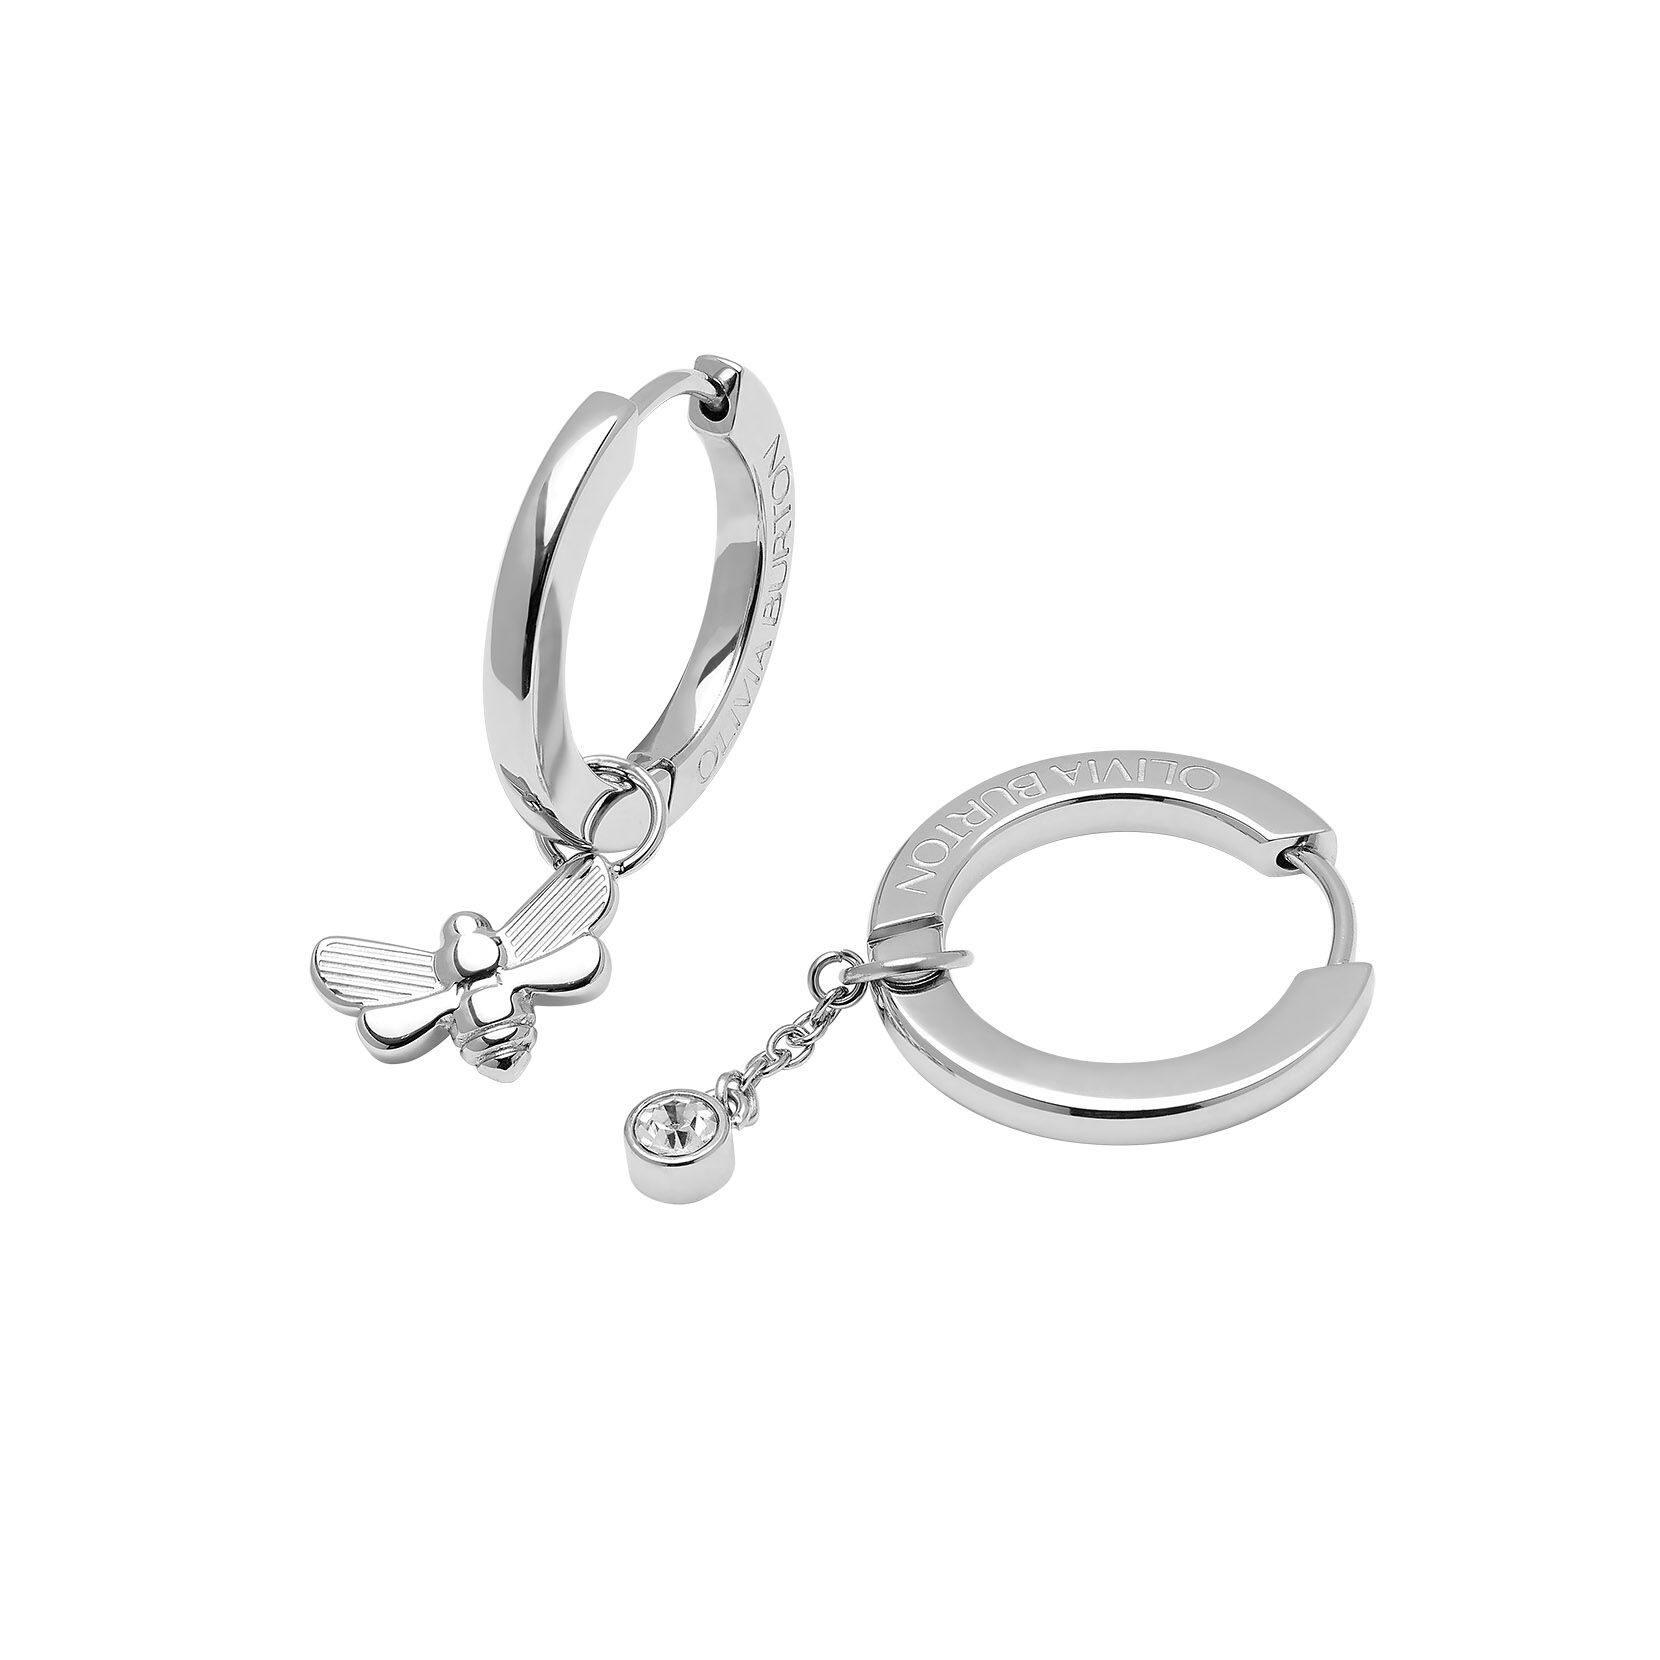 Metal Hoop Earrings Set | Metal Earring Jewelry | Gold Earring Set - Trendy  Geometric - Aliexpress